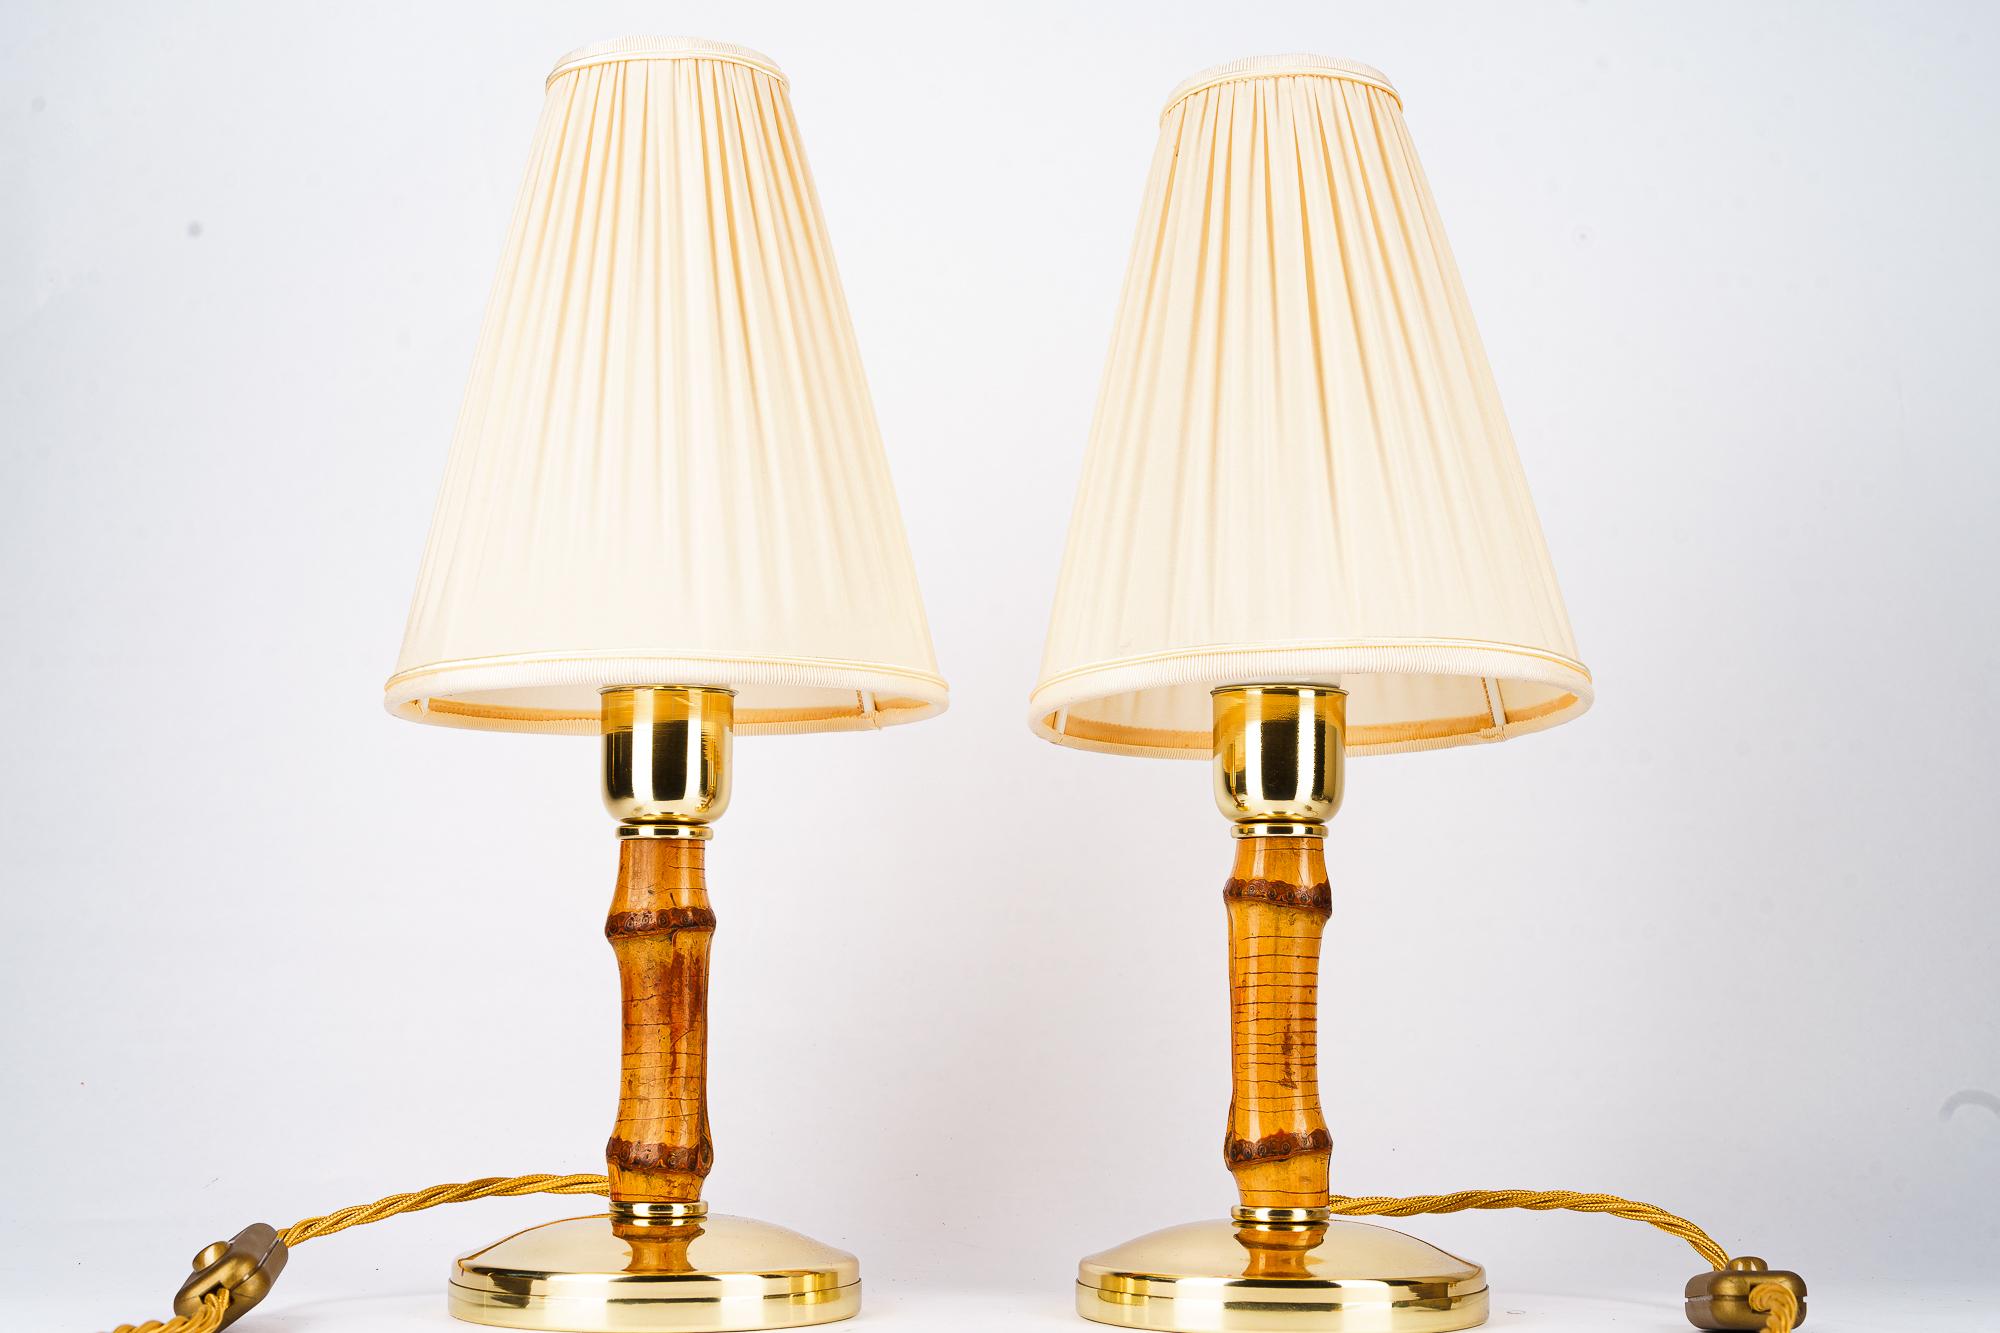 2 lámparas de sobremesa de bambú Rupert Nikoll con pantallas de tela Austria alrededor de los años 50
Latón pulido y esmaltado al horno
Se sustituyen las persianas de tela ( nuevas )
Precio por pareja.